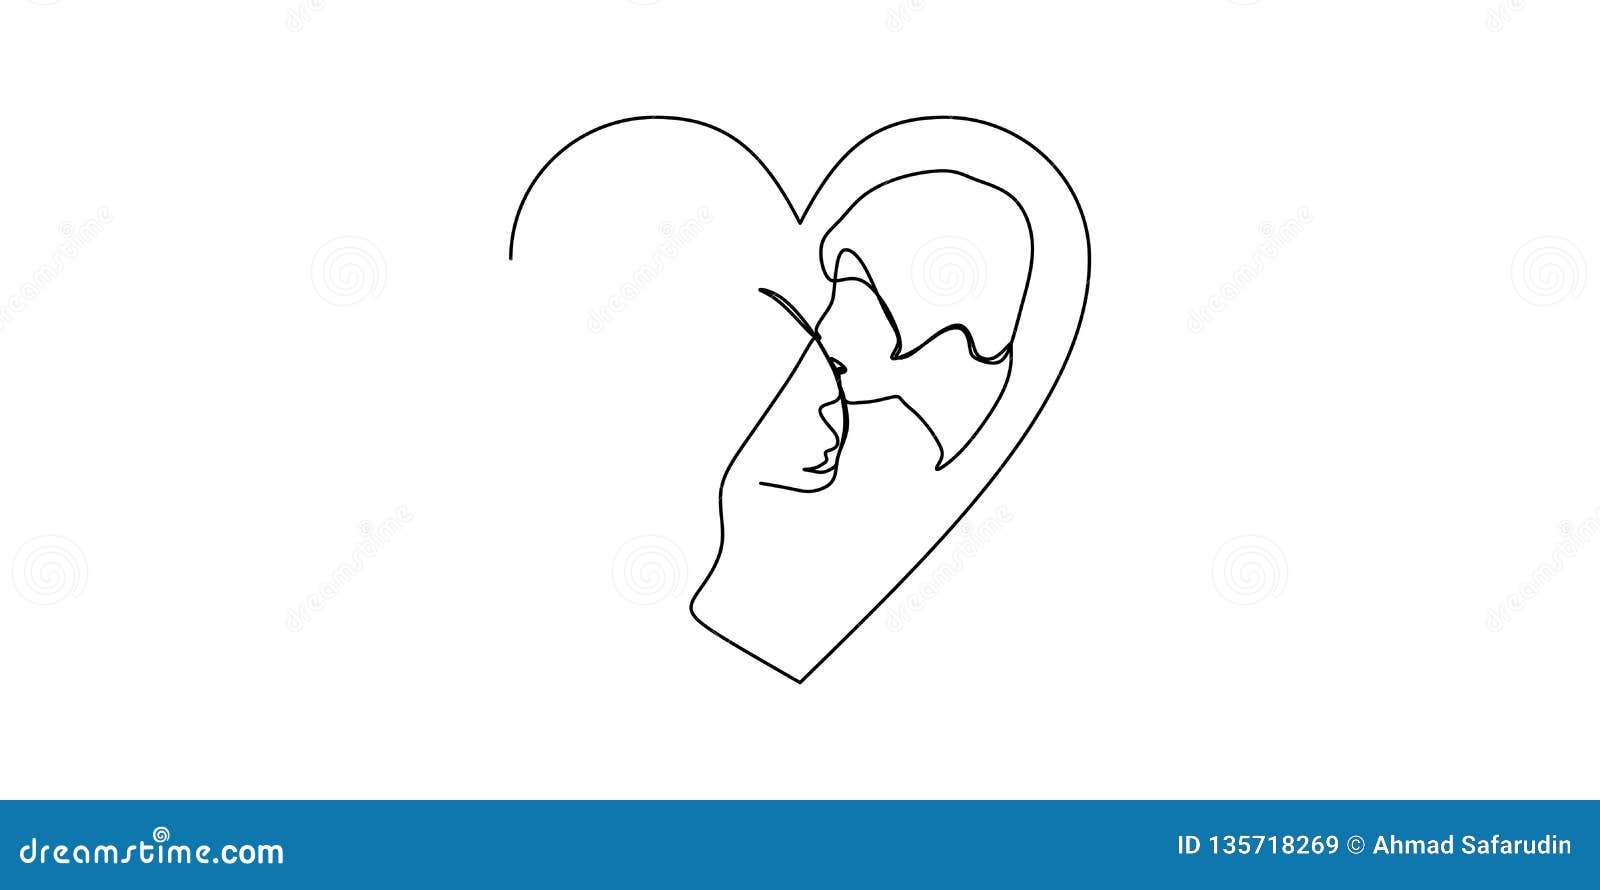 Disegno Di Bacio Di Amore Illustrazioni Vettoriali E Clipart Stock 22 337 Illustrazioni Stock